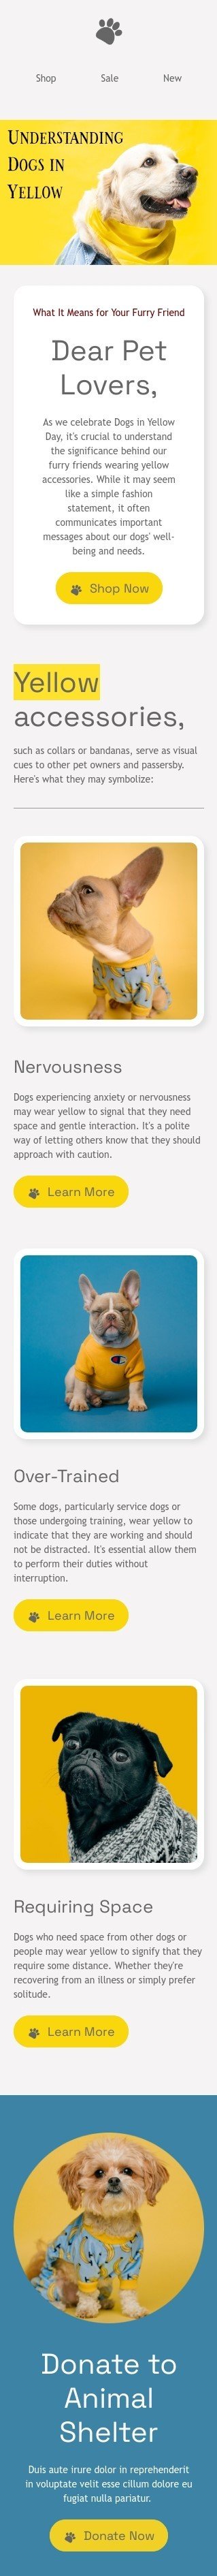 Plantilla de correo electrónico «Entendiendo a los perros en amarillo» de Día de los perros amarillos para la industria de mascotas Vista de móvil